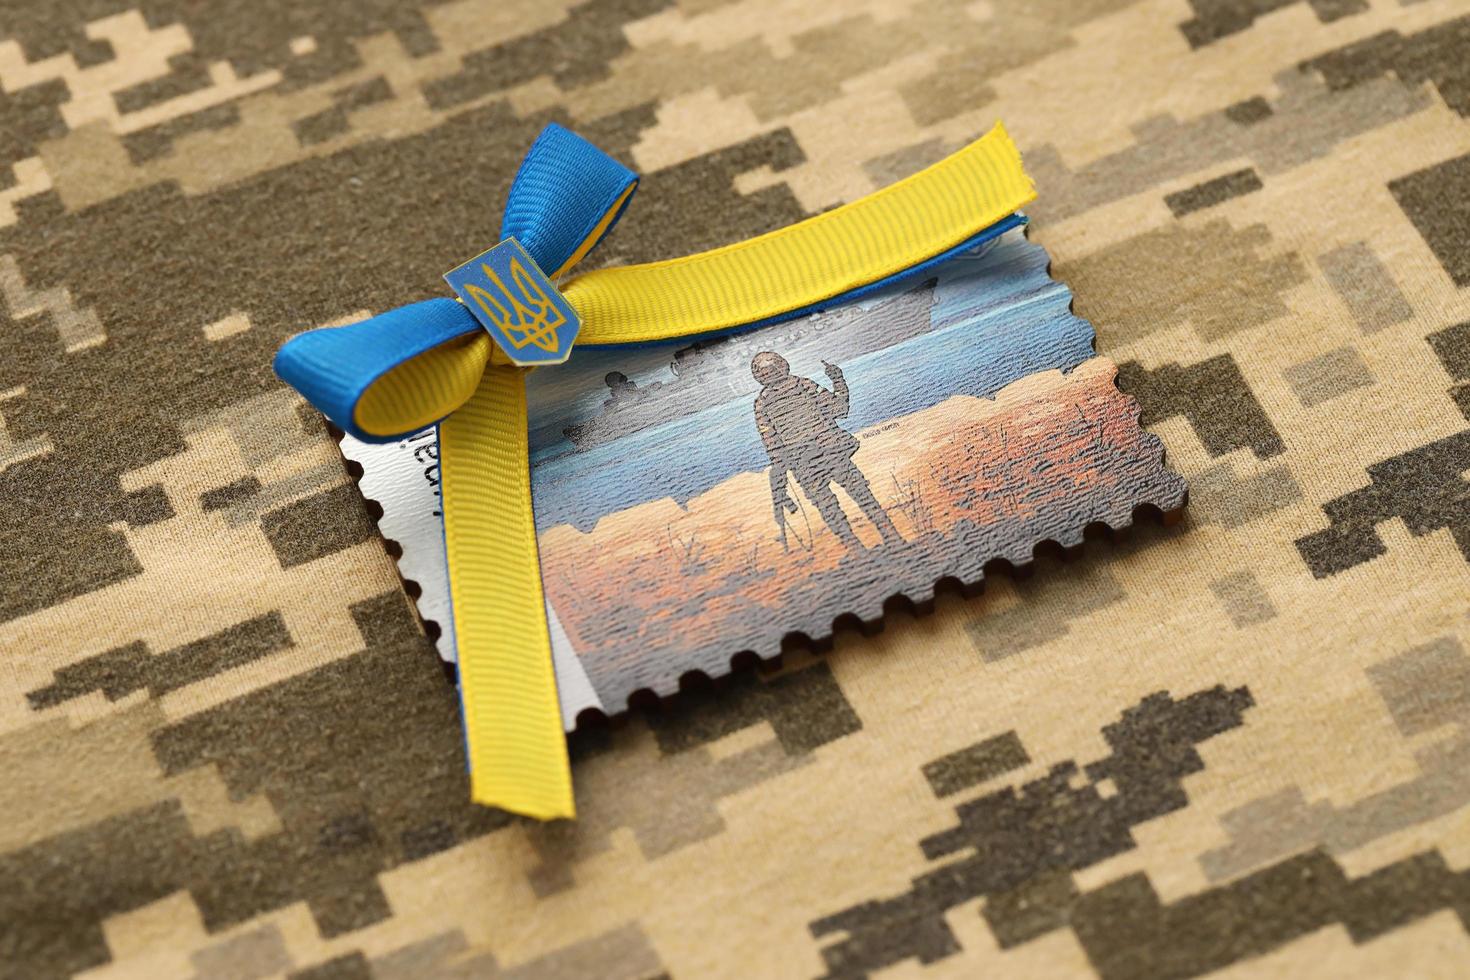 ternopil, ukraine - 2 septembre 2022 célèbre cachet postal ukrainien avec navire de guerre russe et soldat ukrainien comme souvenir en bois sur l'uniforme de camouflage de l'armée photo